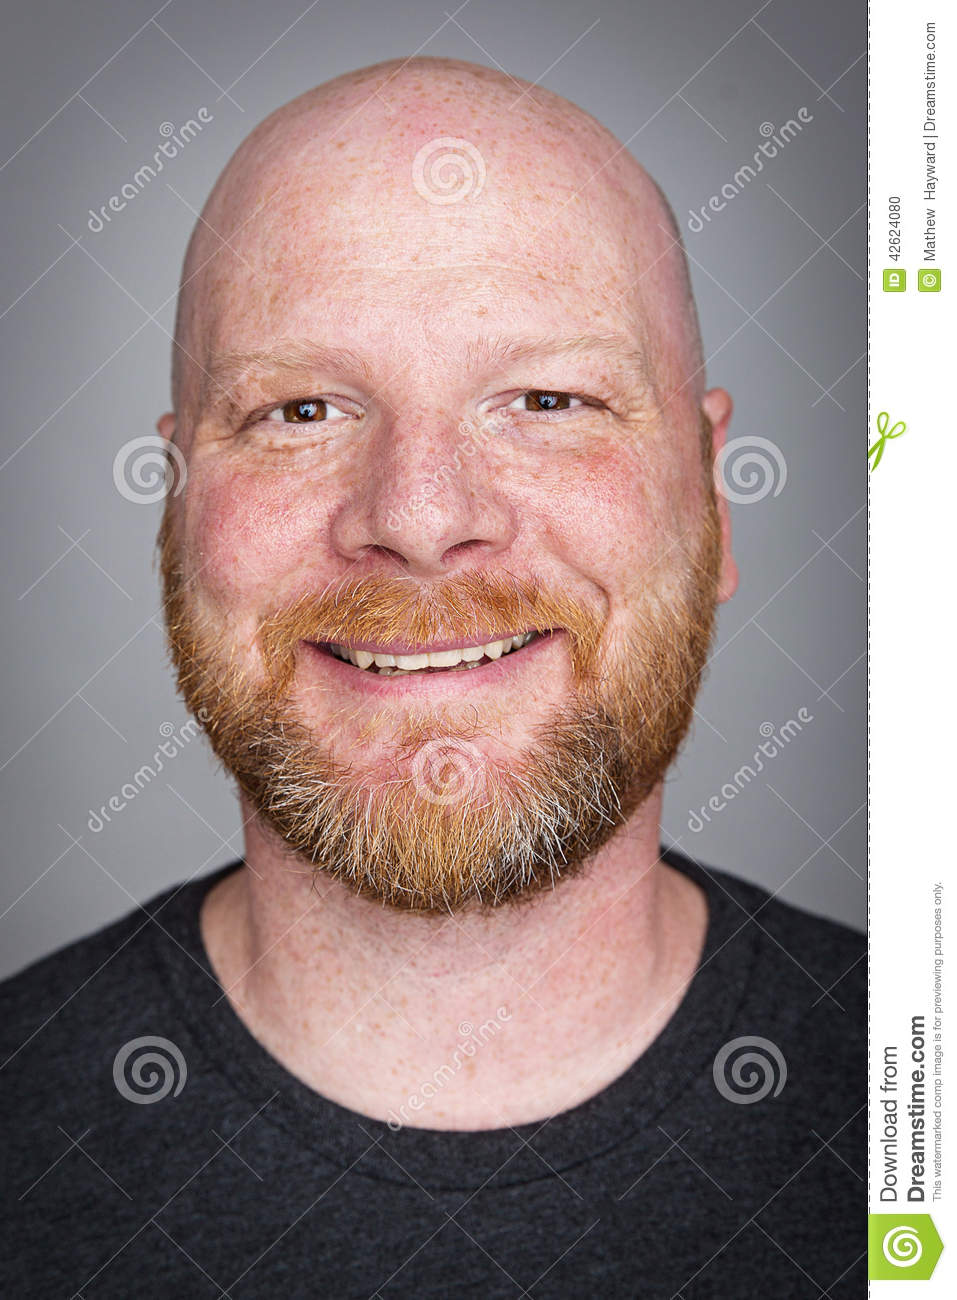 bald-man-beard-handsome-red-haired-smile-42624080.jpg